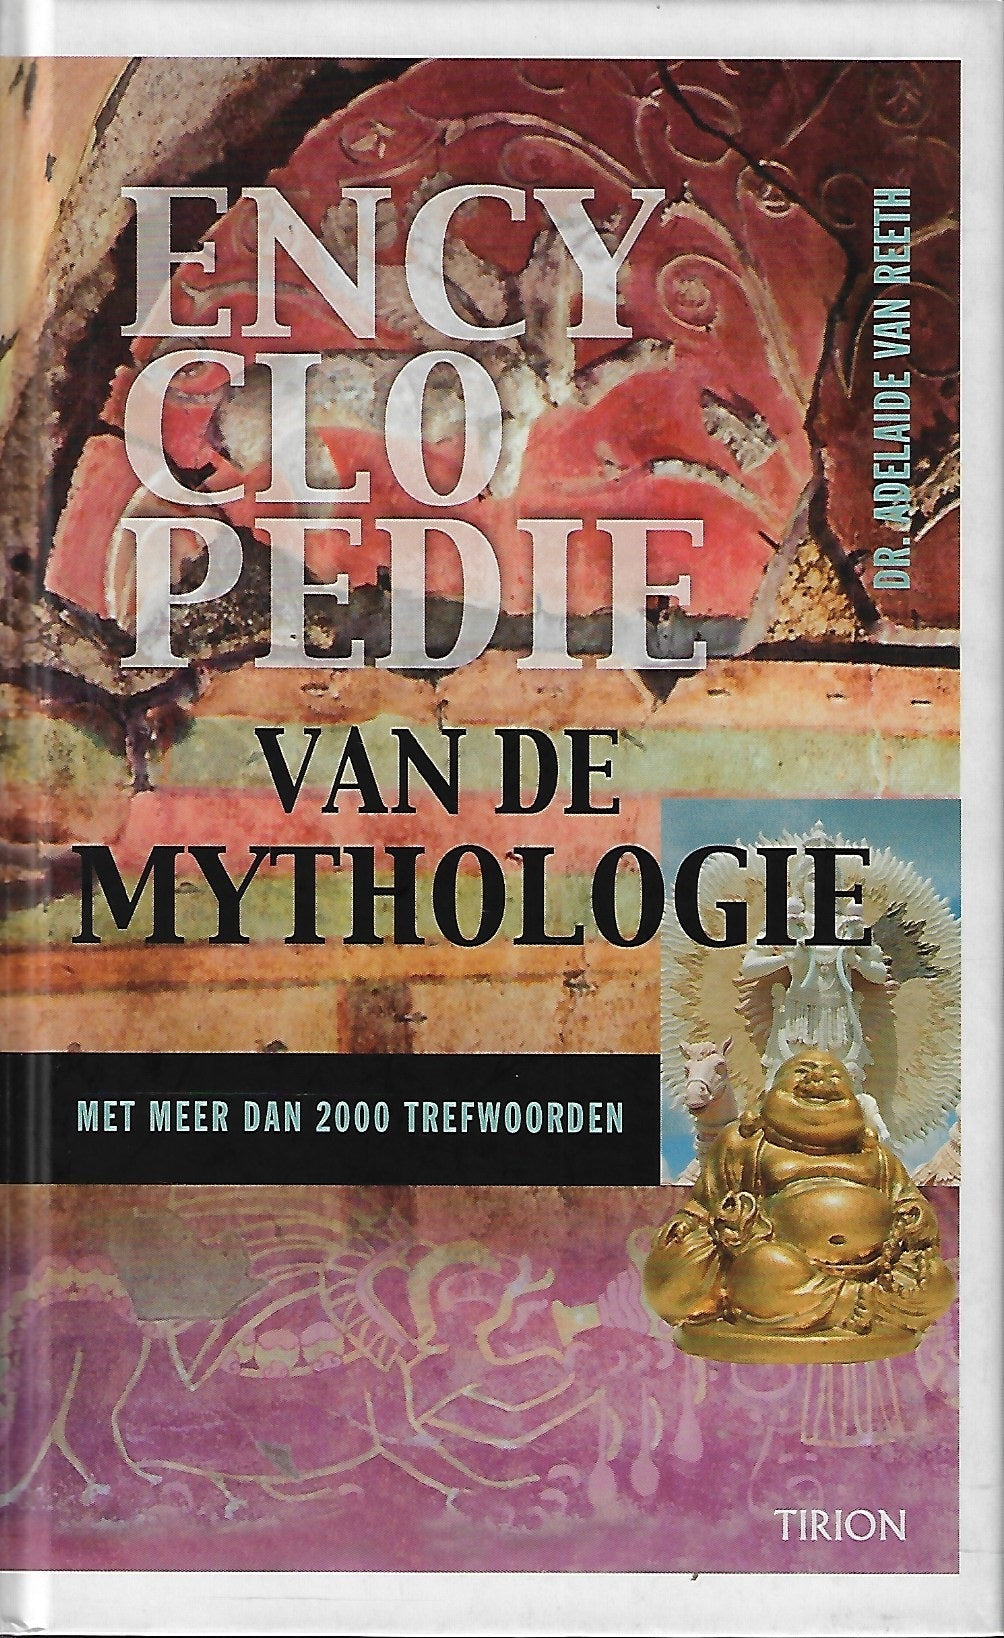 Encyclopedie van de mythologie / metmeer dan 2000 trefwoorden